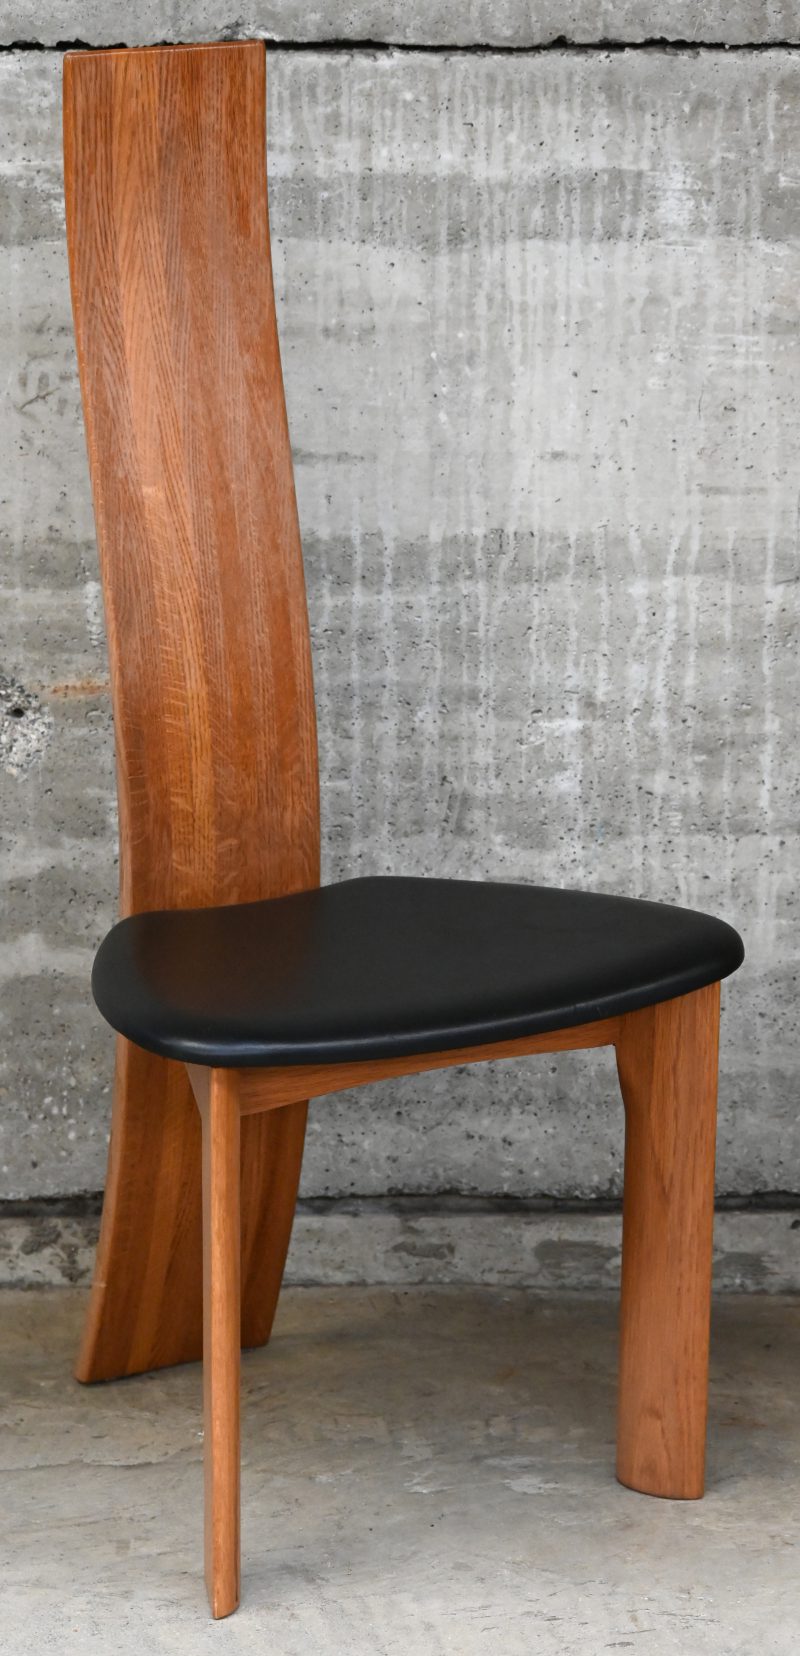 Een design stoel met zwarte bekleding. Naar het model Golem van Vico Magistretti (1969).